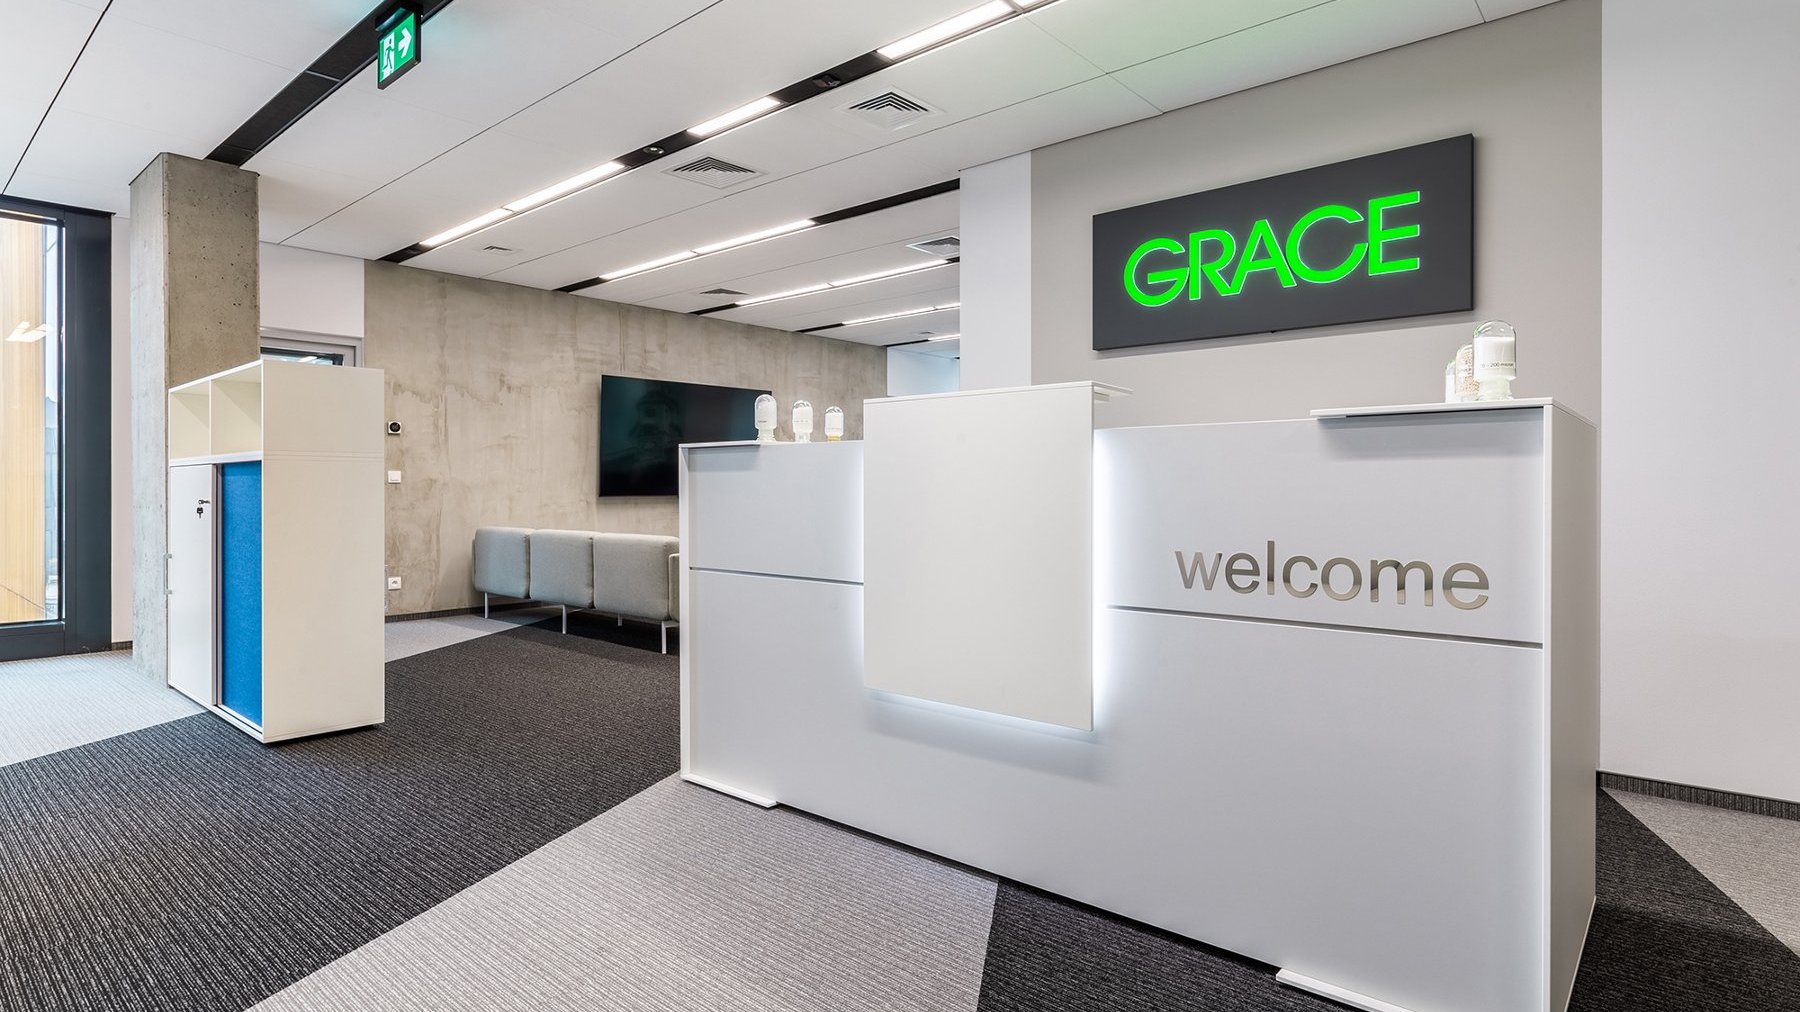 Zdjęcie przedstawia białą ścianę, widnieje na niej logo firmy Grace. Przed nim znajduje się biała recepcja z napisem "Welcome".